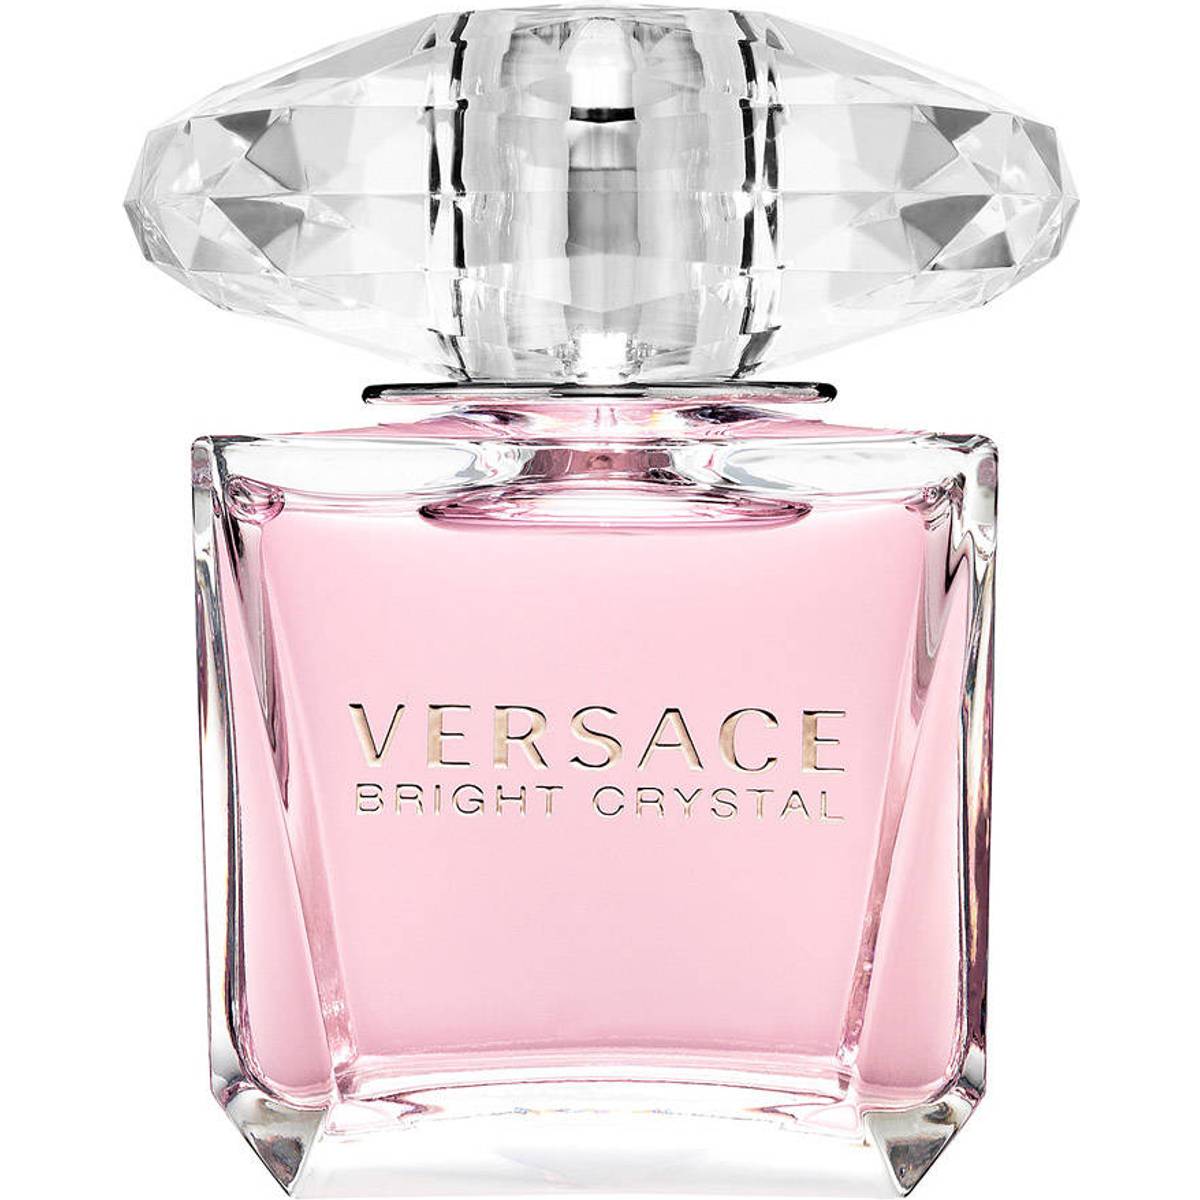 Versace bright crystal 90ml • Hitta lägsta pris hos PriceRunner nu